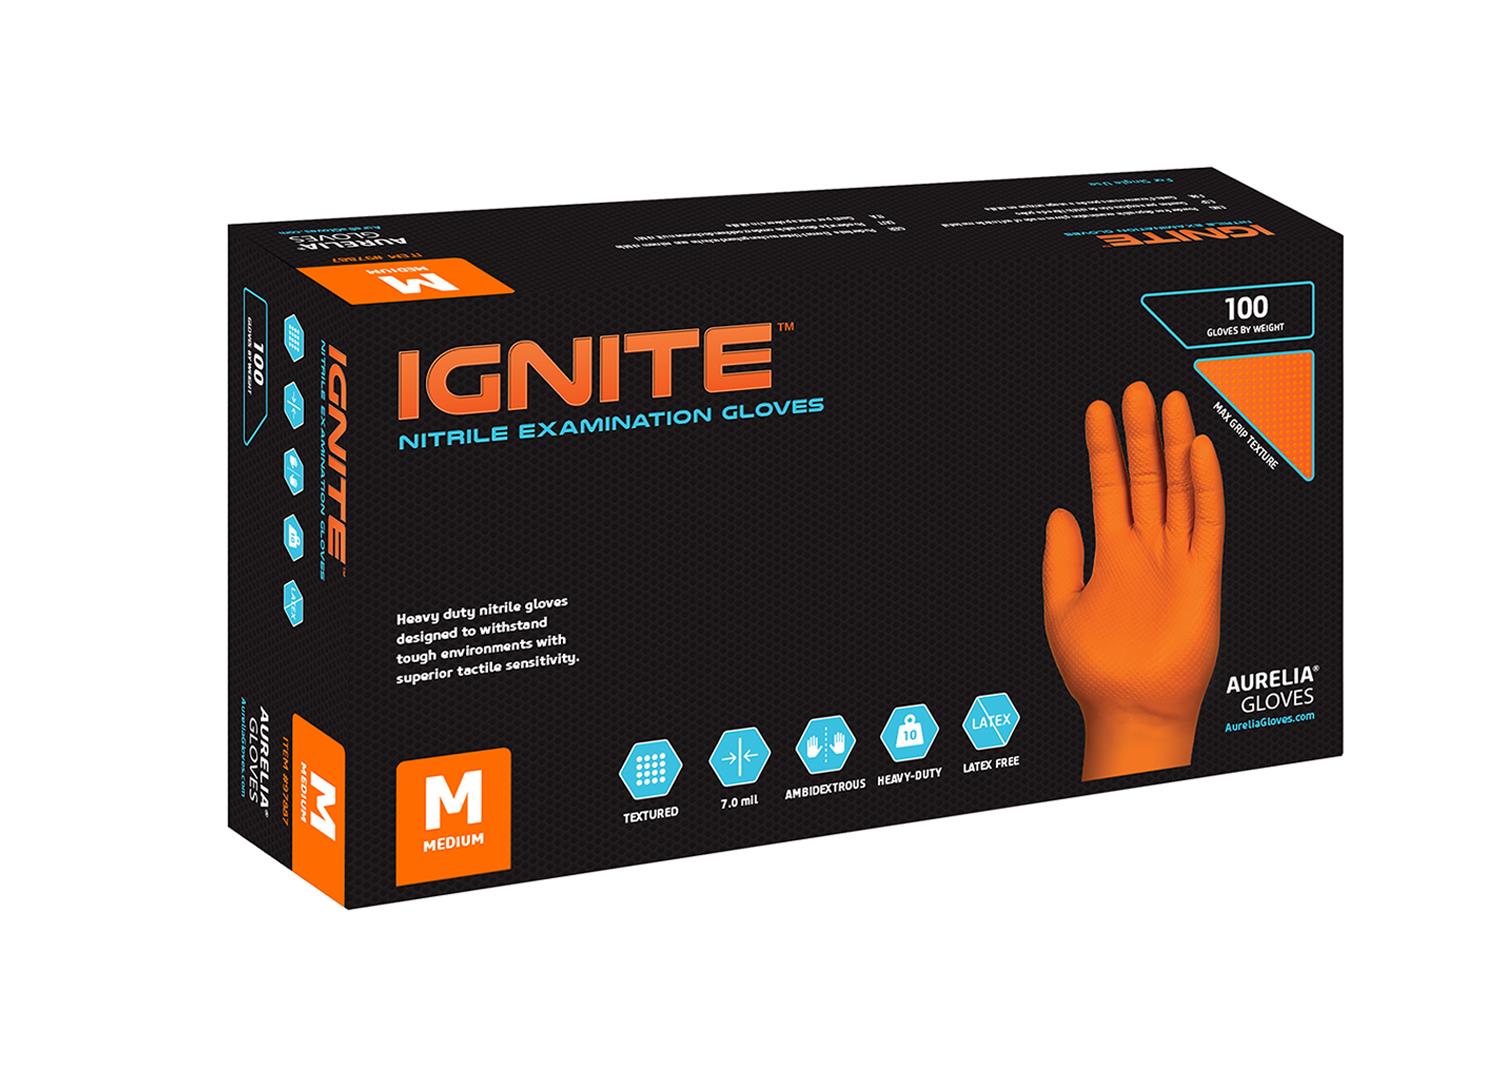 Aurelia Ignite orange heavy duty industrial nitrile examination work gloves